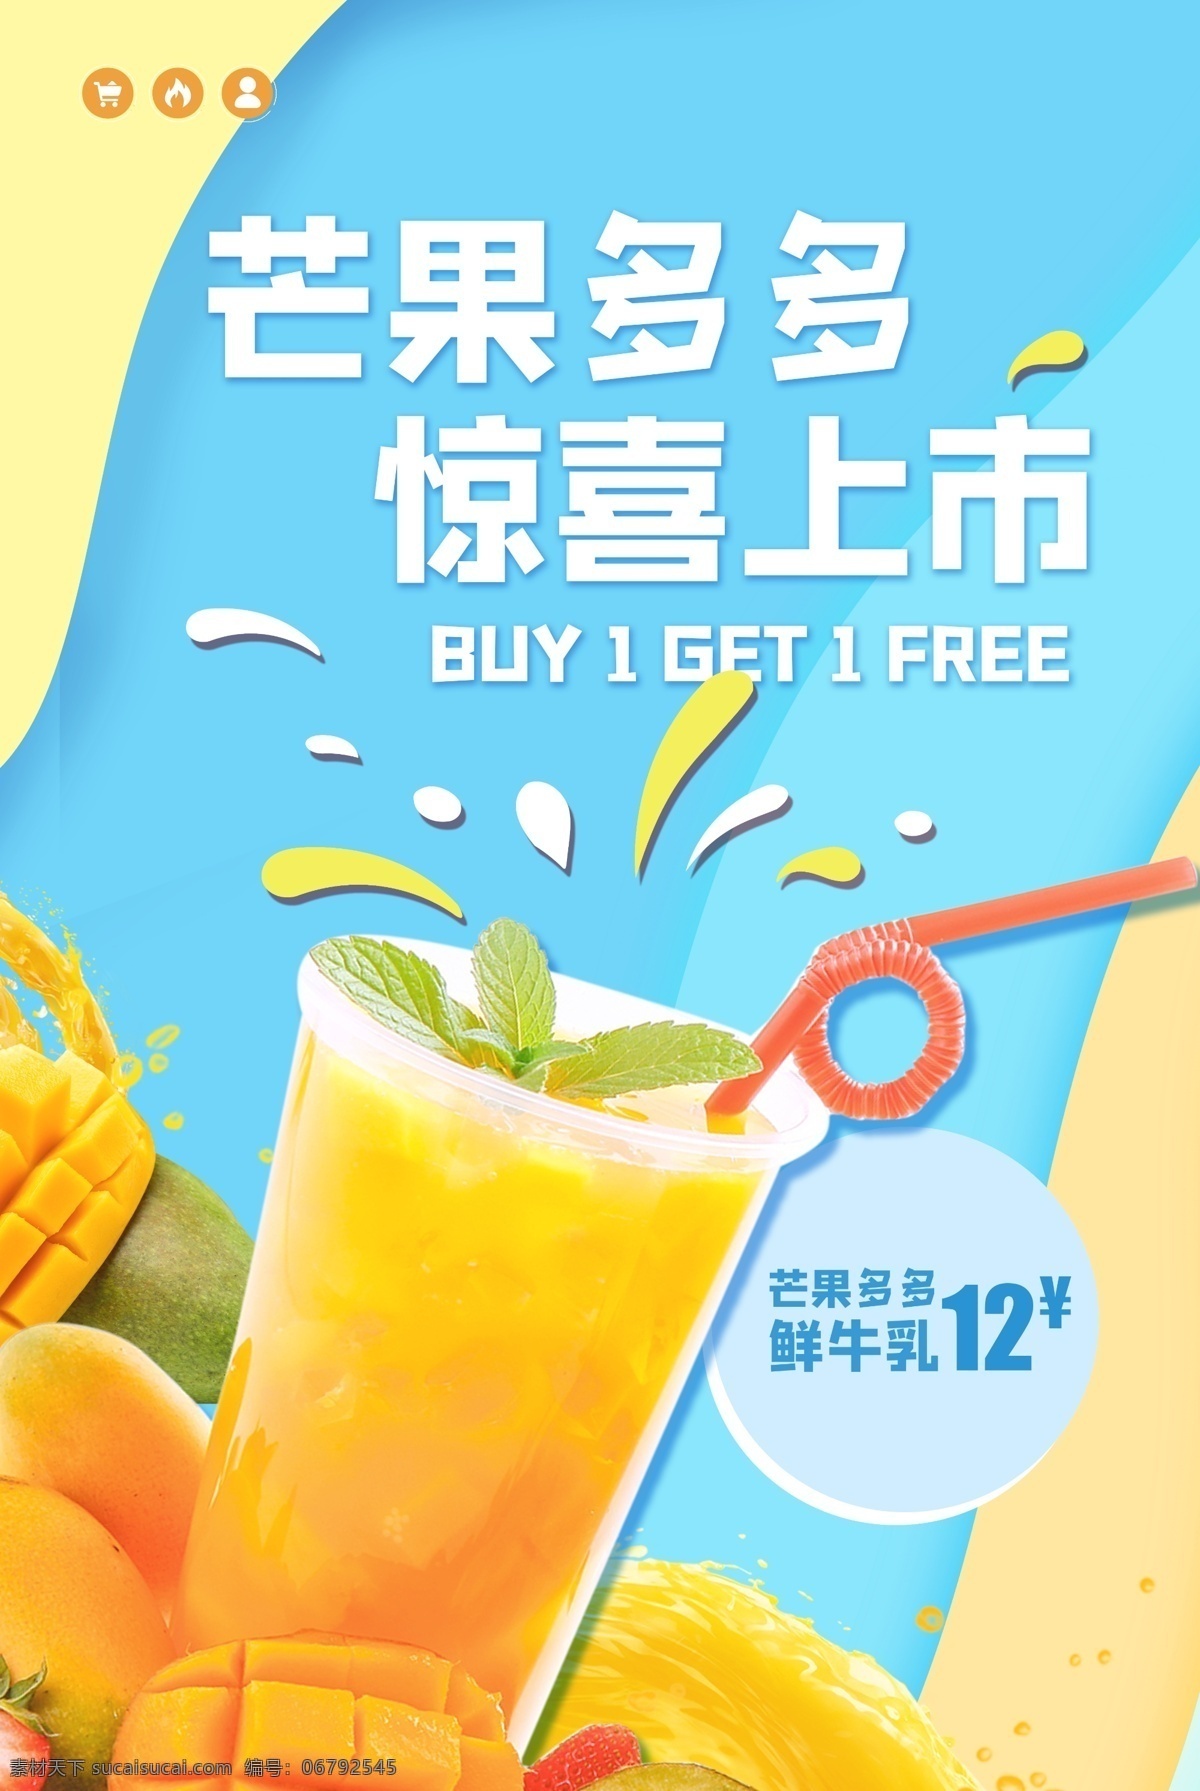 饮品 促销活动 芒果汁 海报 促销 活动